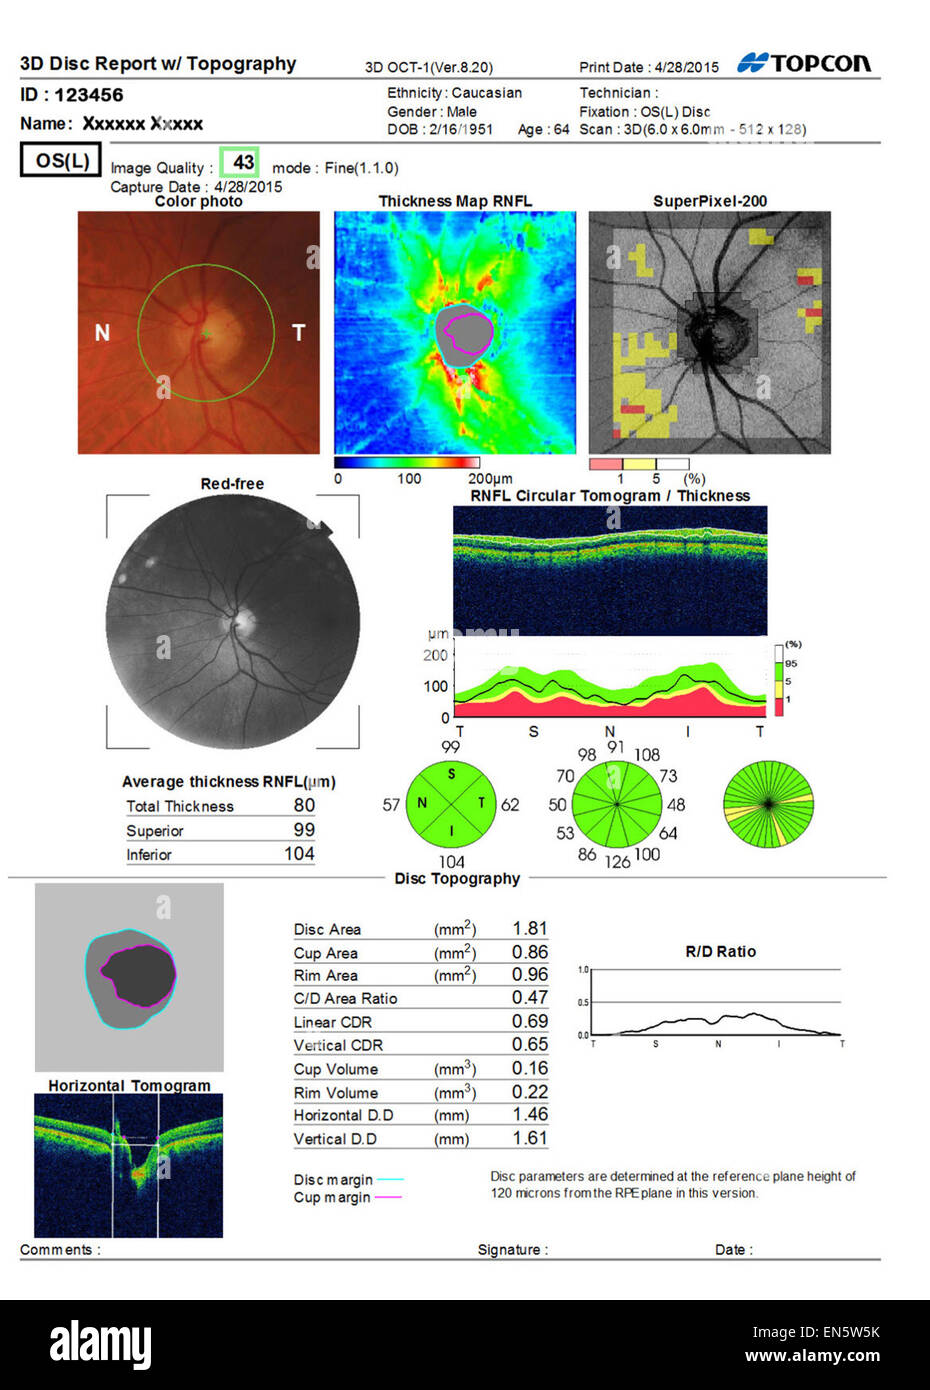 Scan ultra sound Sehtest zeigt 3D Makula-Bericht des menschlichen Auges Vist verschiedene grafische Darstellungen. Stockfoto